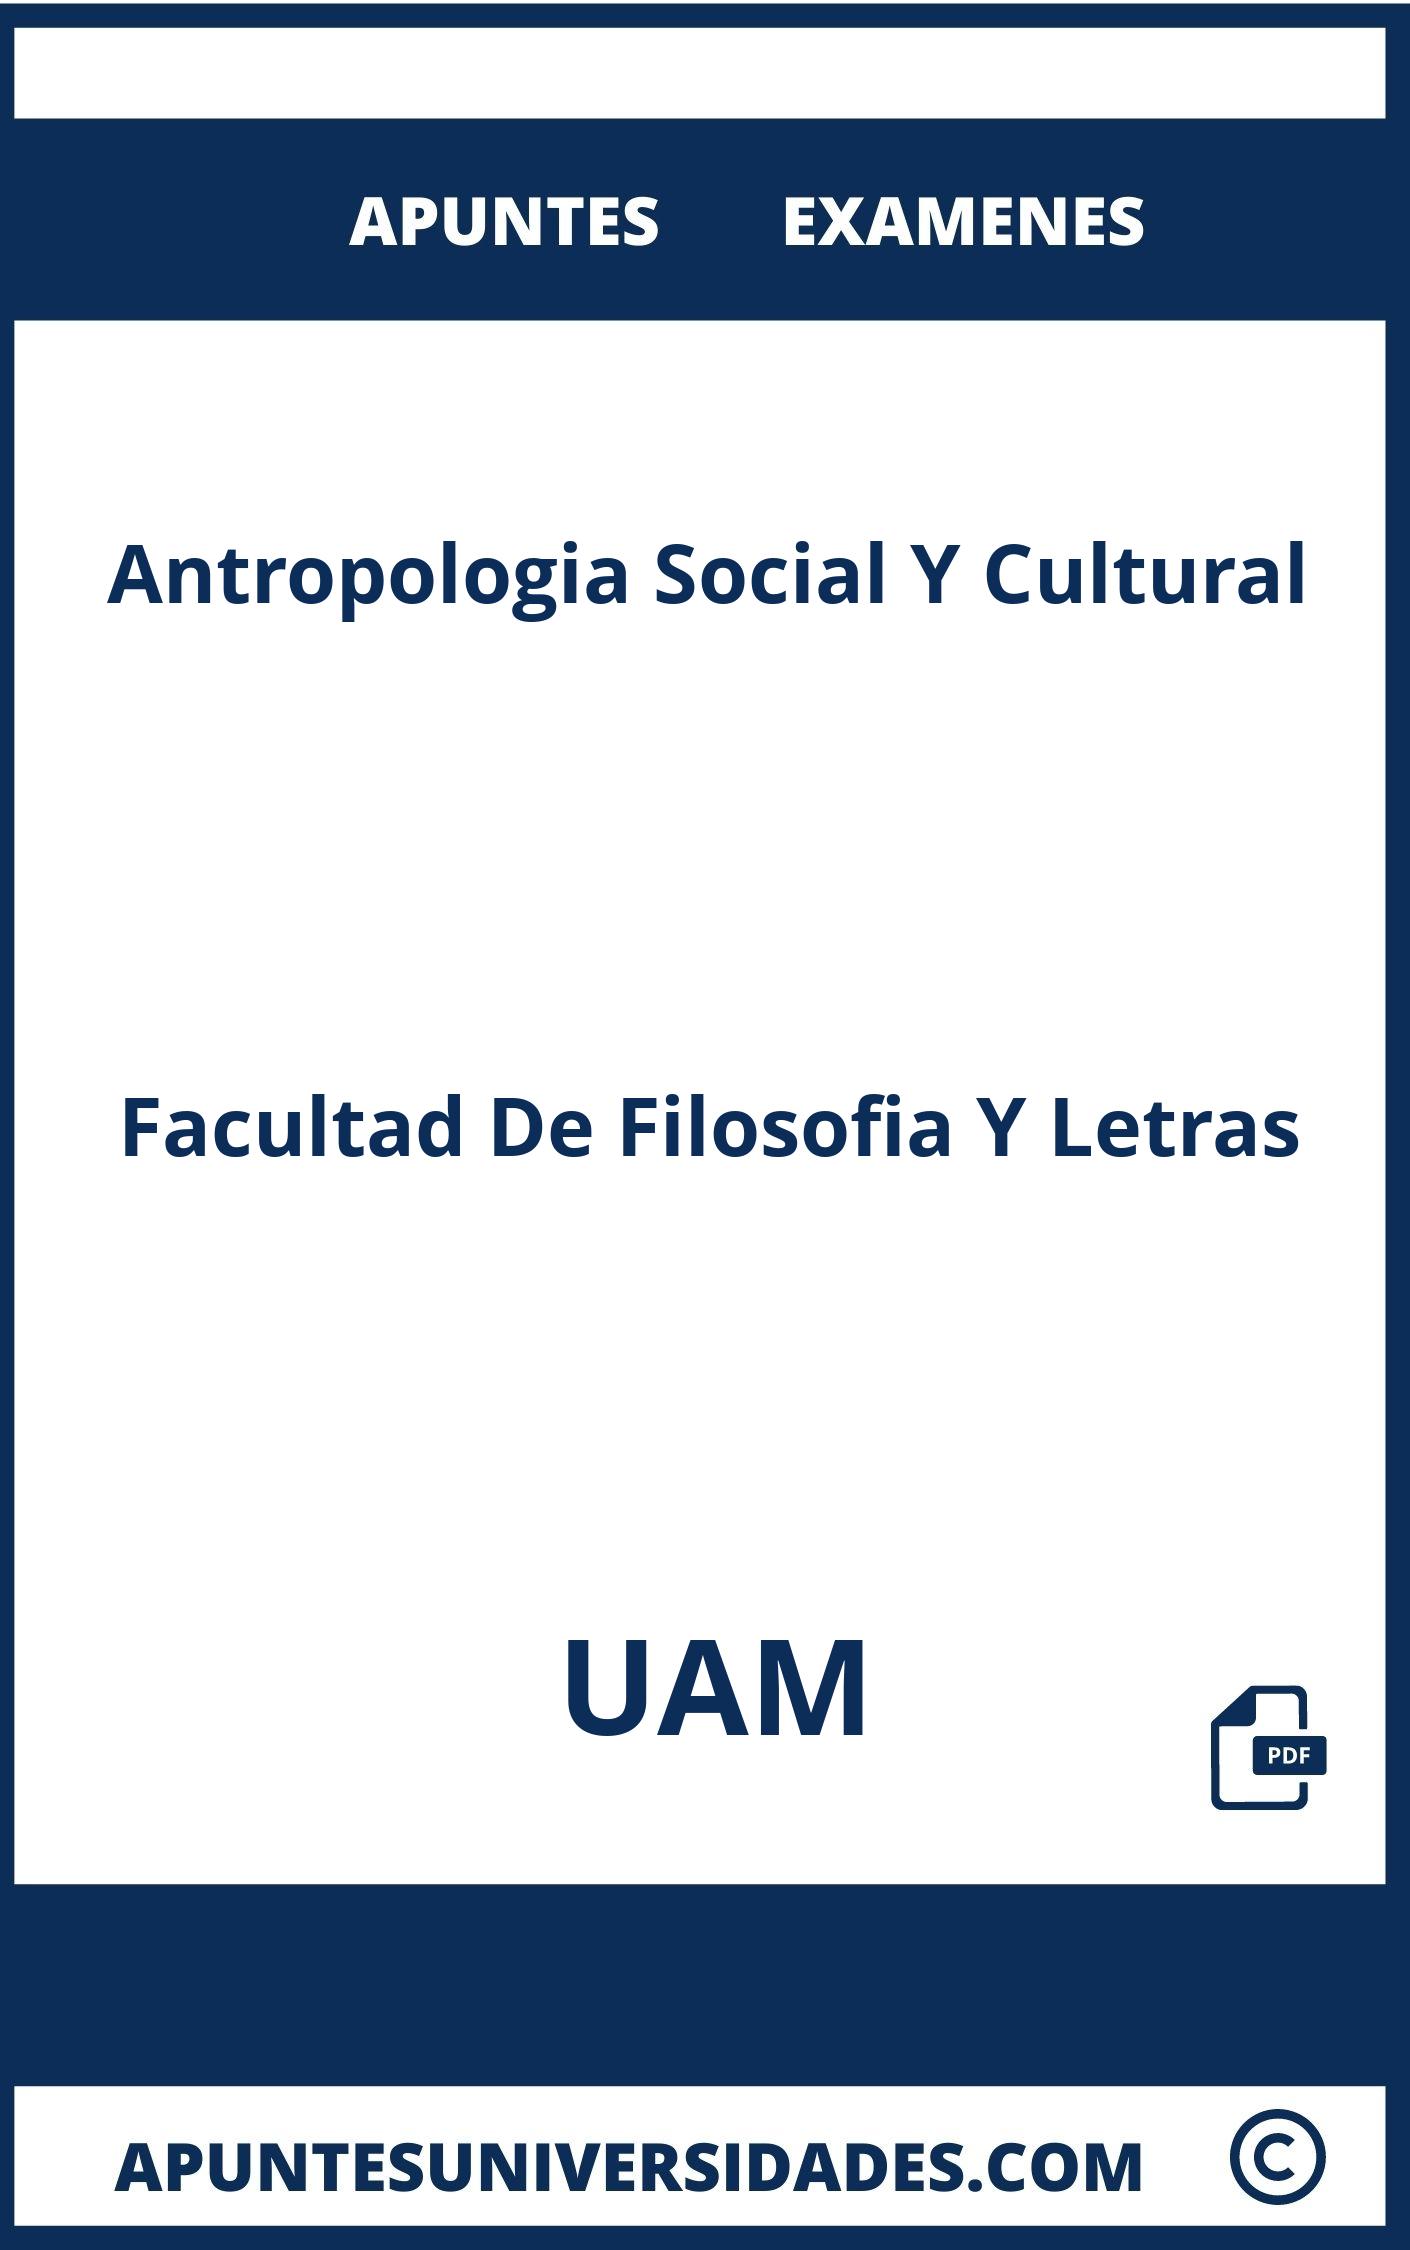 Antropologia Social Y Cultural UAM Examenes Apuntes